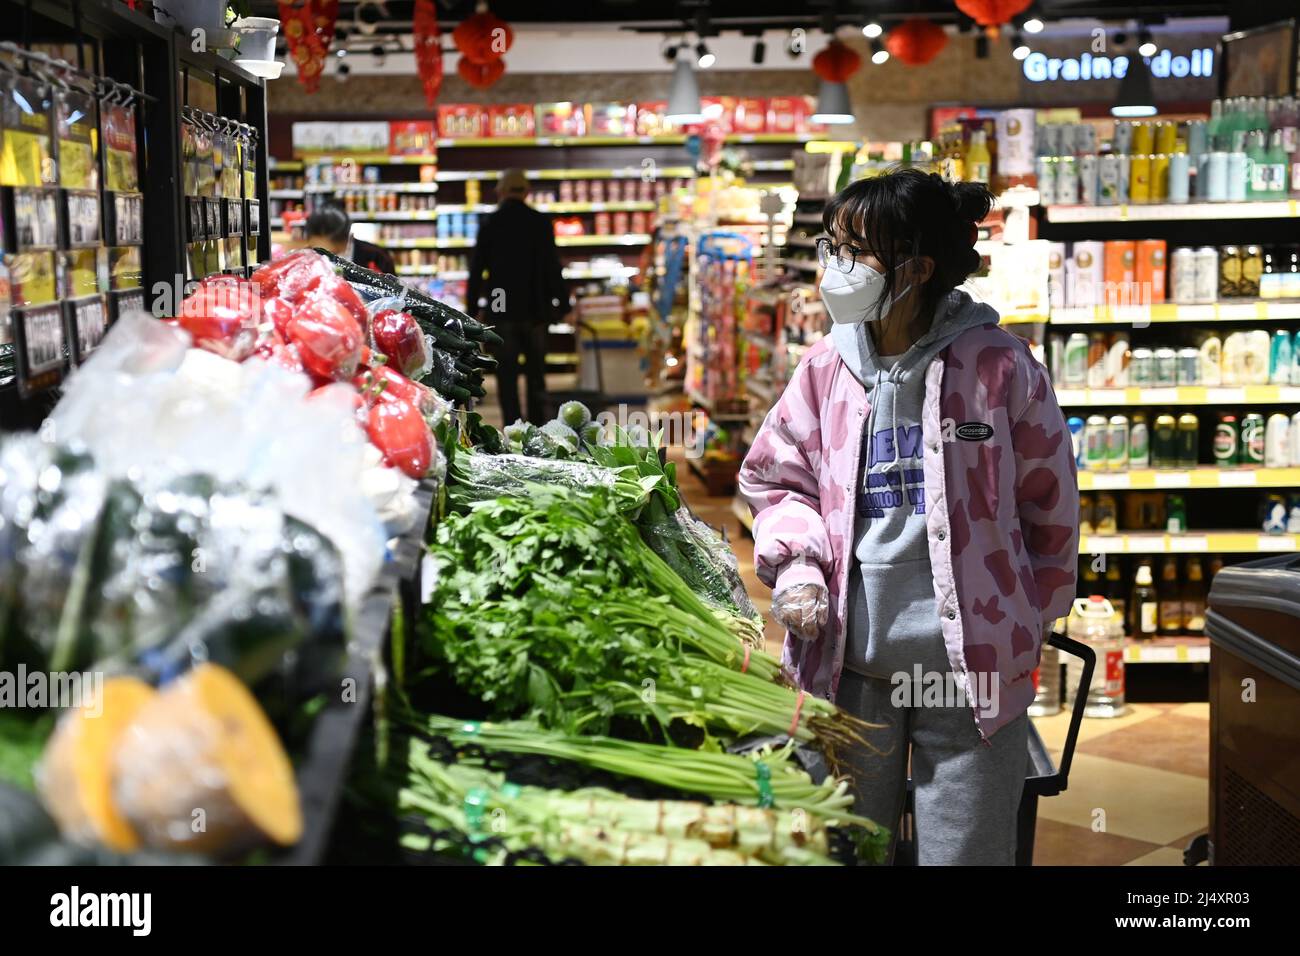 Xining, Chinas Provinz Qinghai. 18. April 2022. Bürger kaufen in einem Supermarkt im Bezirk Chengxi der Stadt Xining, nordwestlich der chinesischen Provinz Qinghai, 18. April 2022. Die lokalen Behörden haben Maßnahmen ergriffen, um die Versorgung sicherzustellen, und in der Zwischenzeit haben sie Teams eingerichtet, um lebende Güter für die Bewohner der kontrollierten Gemeinden zu kaufen und zu verteilen, während das jüngste Wiederaufleben von COVID-19-Infektionen aufkommt. Quelle: Fan Peissen/Xinhua/Alamy Live News Stockfoto